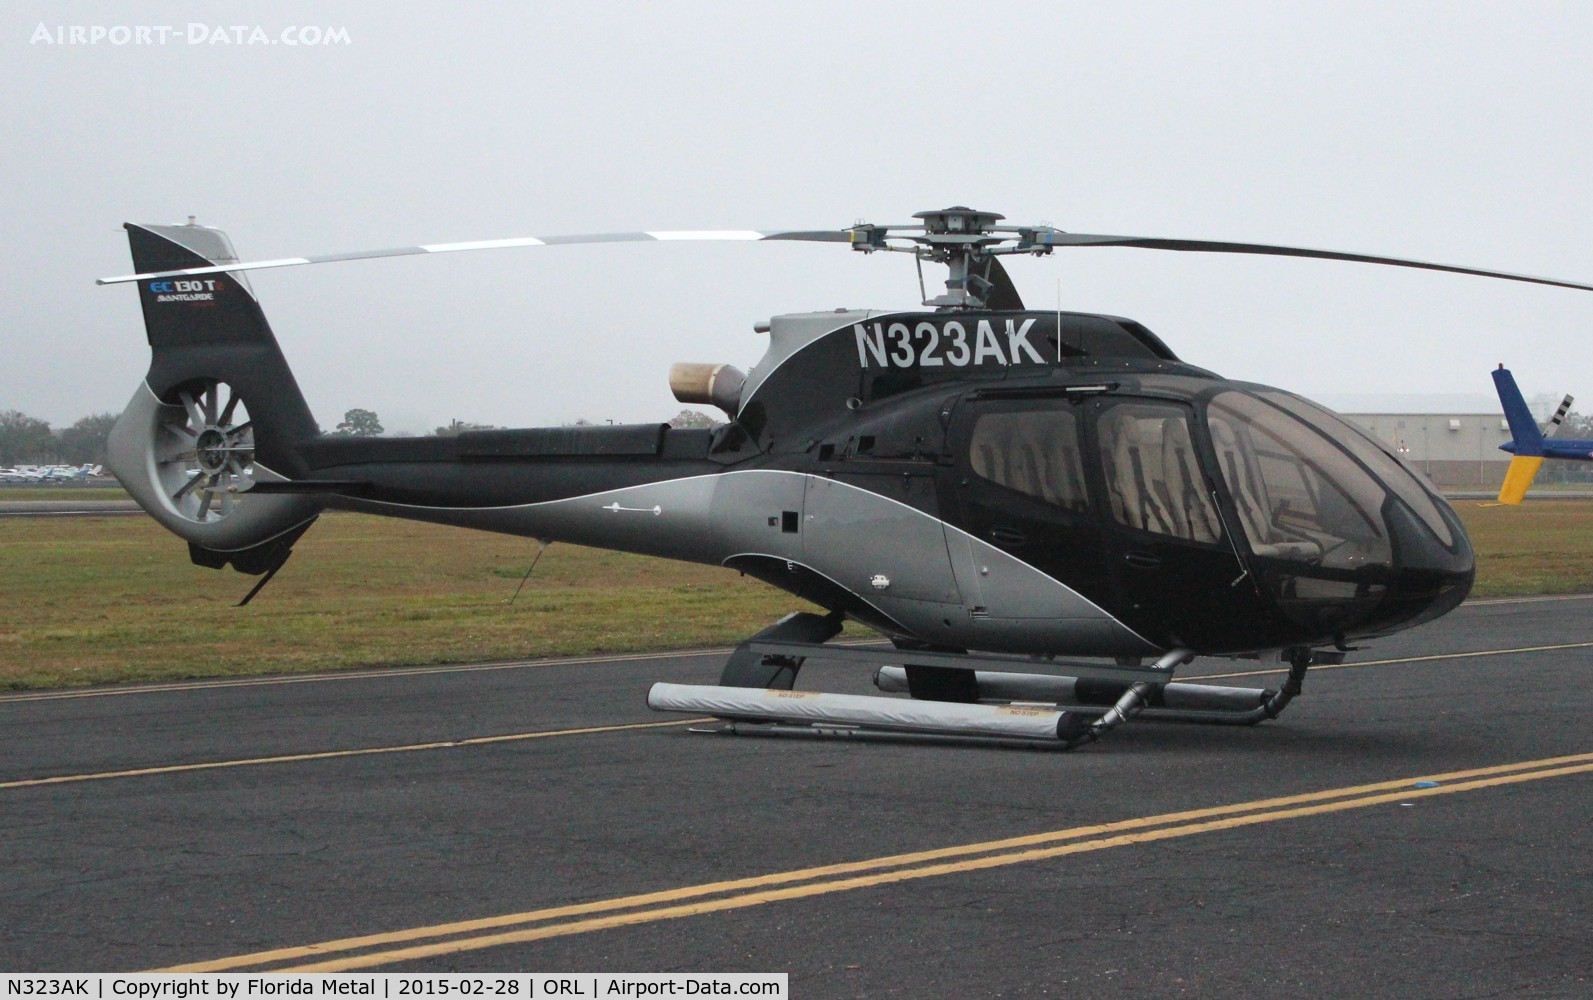 N323AK, 2014 Airbus Helicopters EC-130T-2 C/N 7962, EC-130